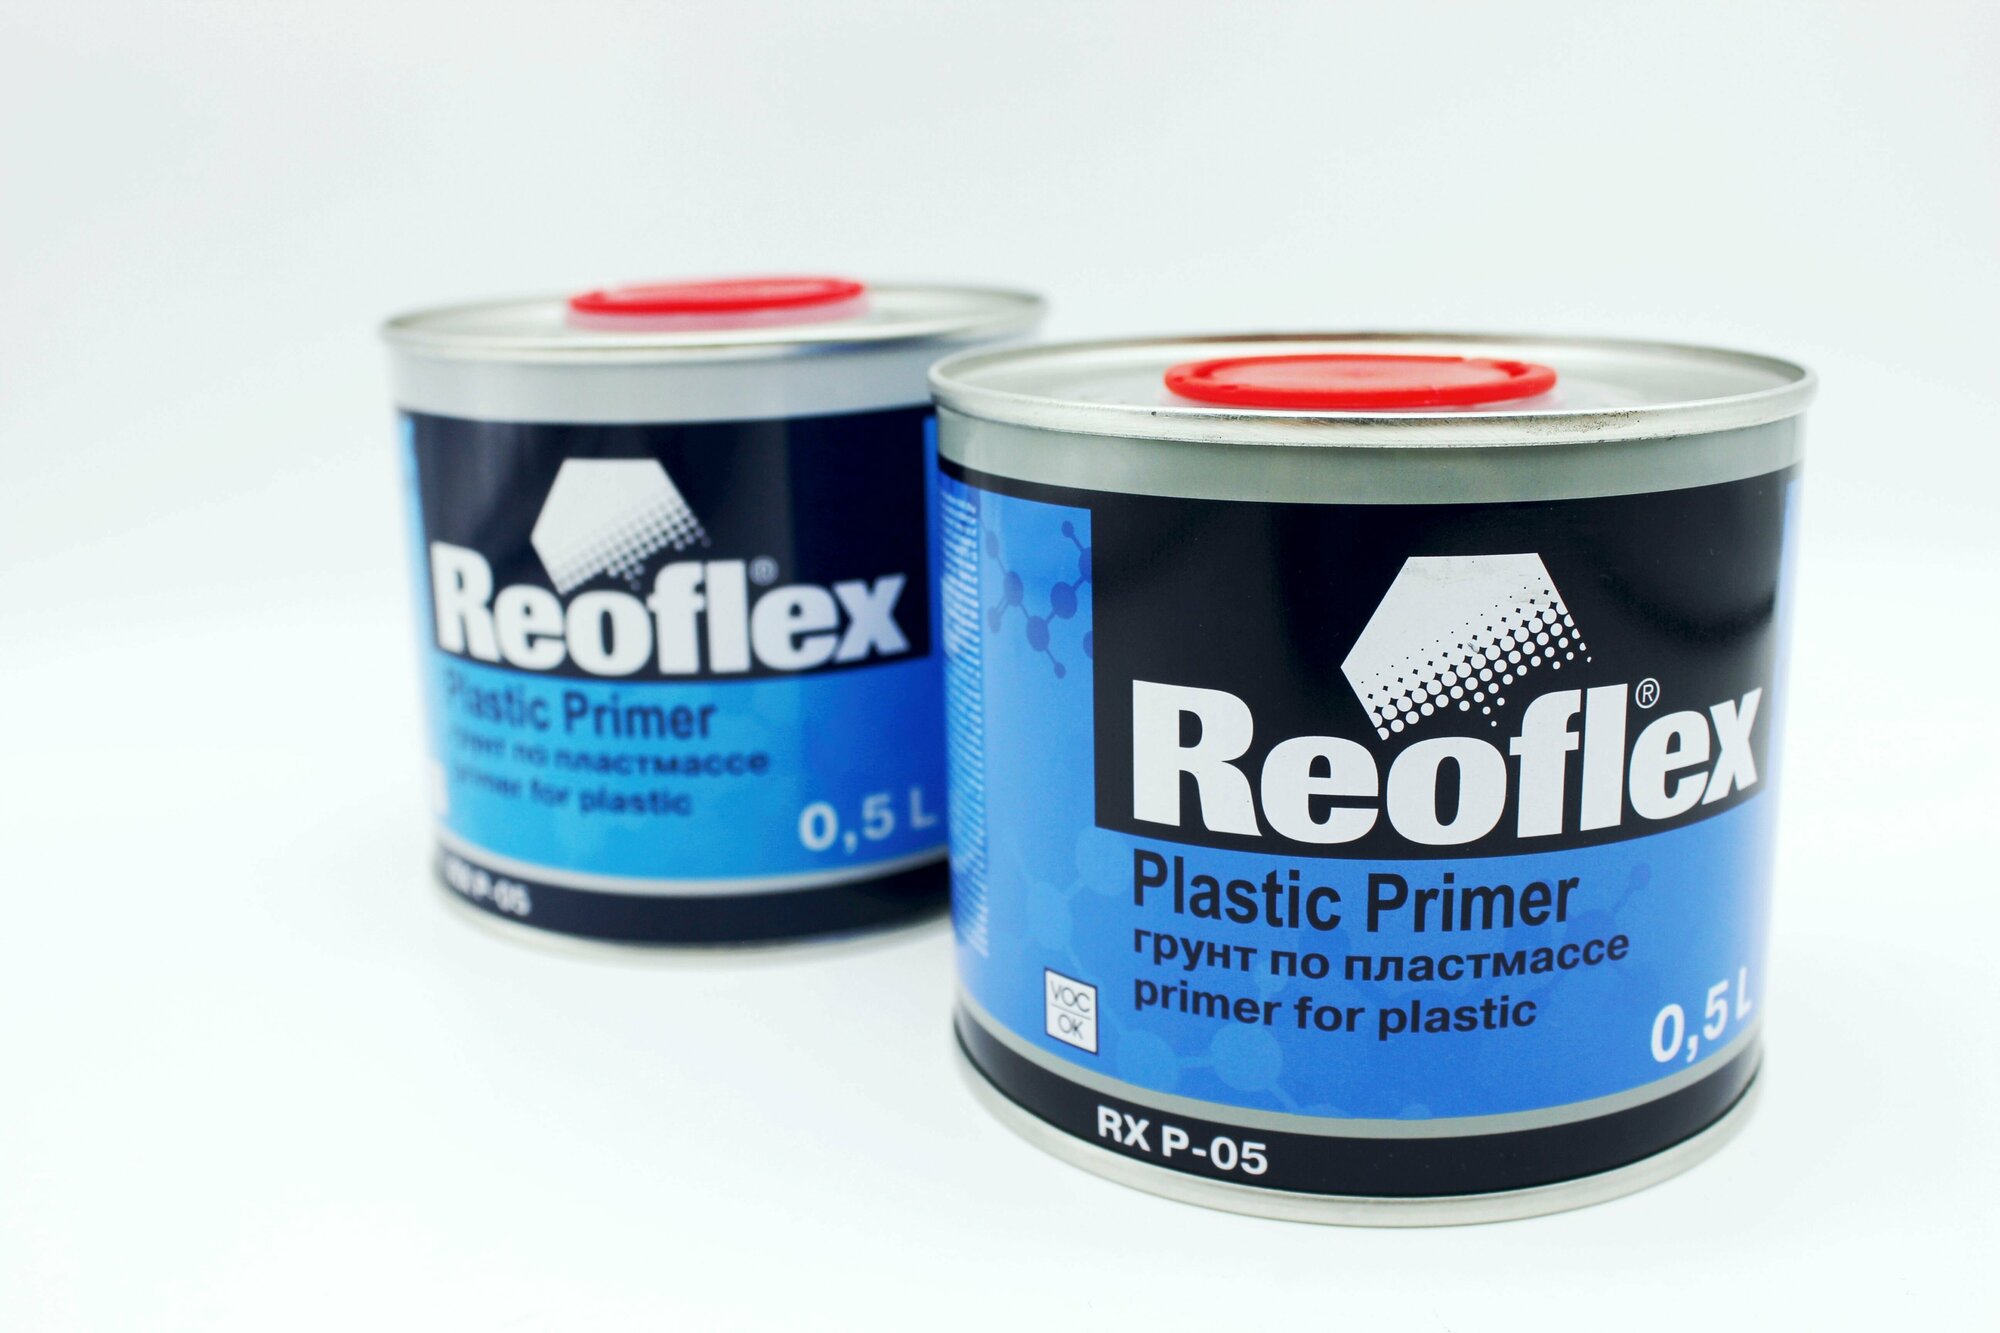 Reoflex 1K Грунт по пластмассе RX P-05 прозрачный 0,5л. Plastic Primer автомобильная грунтовка.